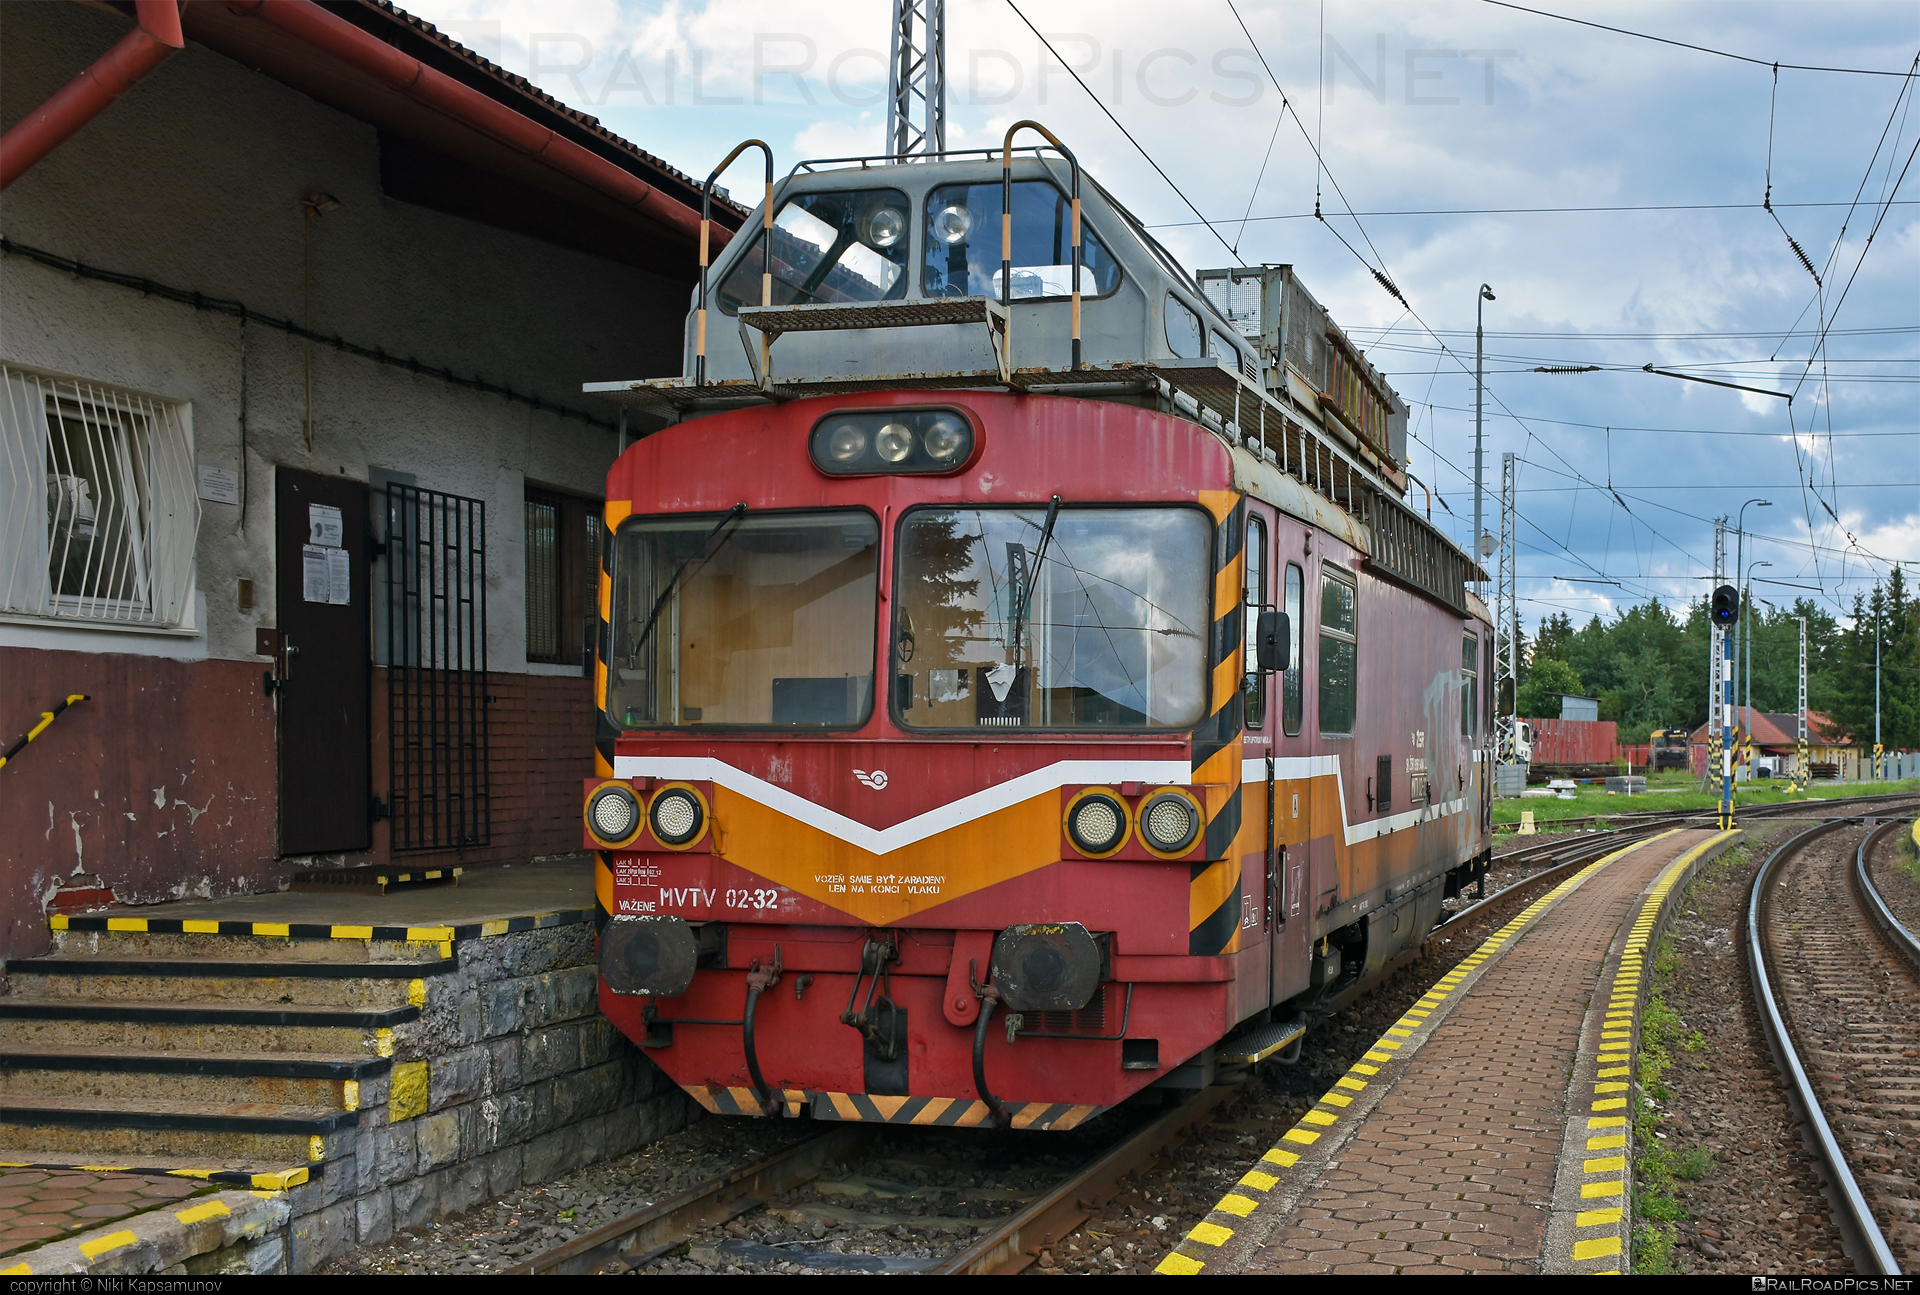 Vagónka Studénka MVTV 02 - MVTV 02-32 operated by Železnice Slovenskej Republiky #locomotivemvtv #mvtv02 #mvtv2 #vagonkastudenka #zelezniceslovenskejrepubliky #zsr